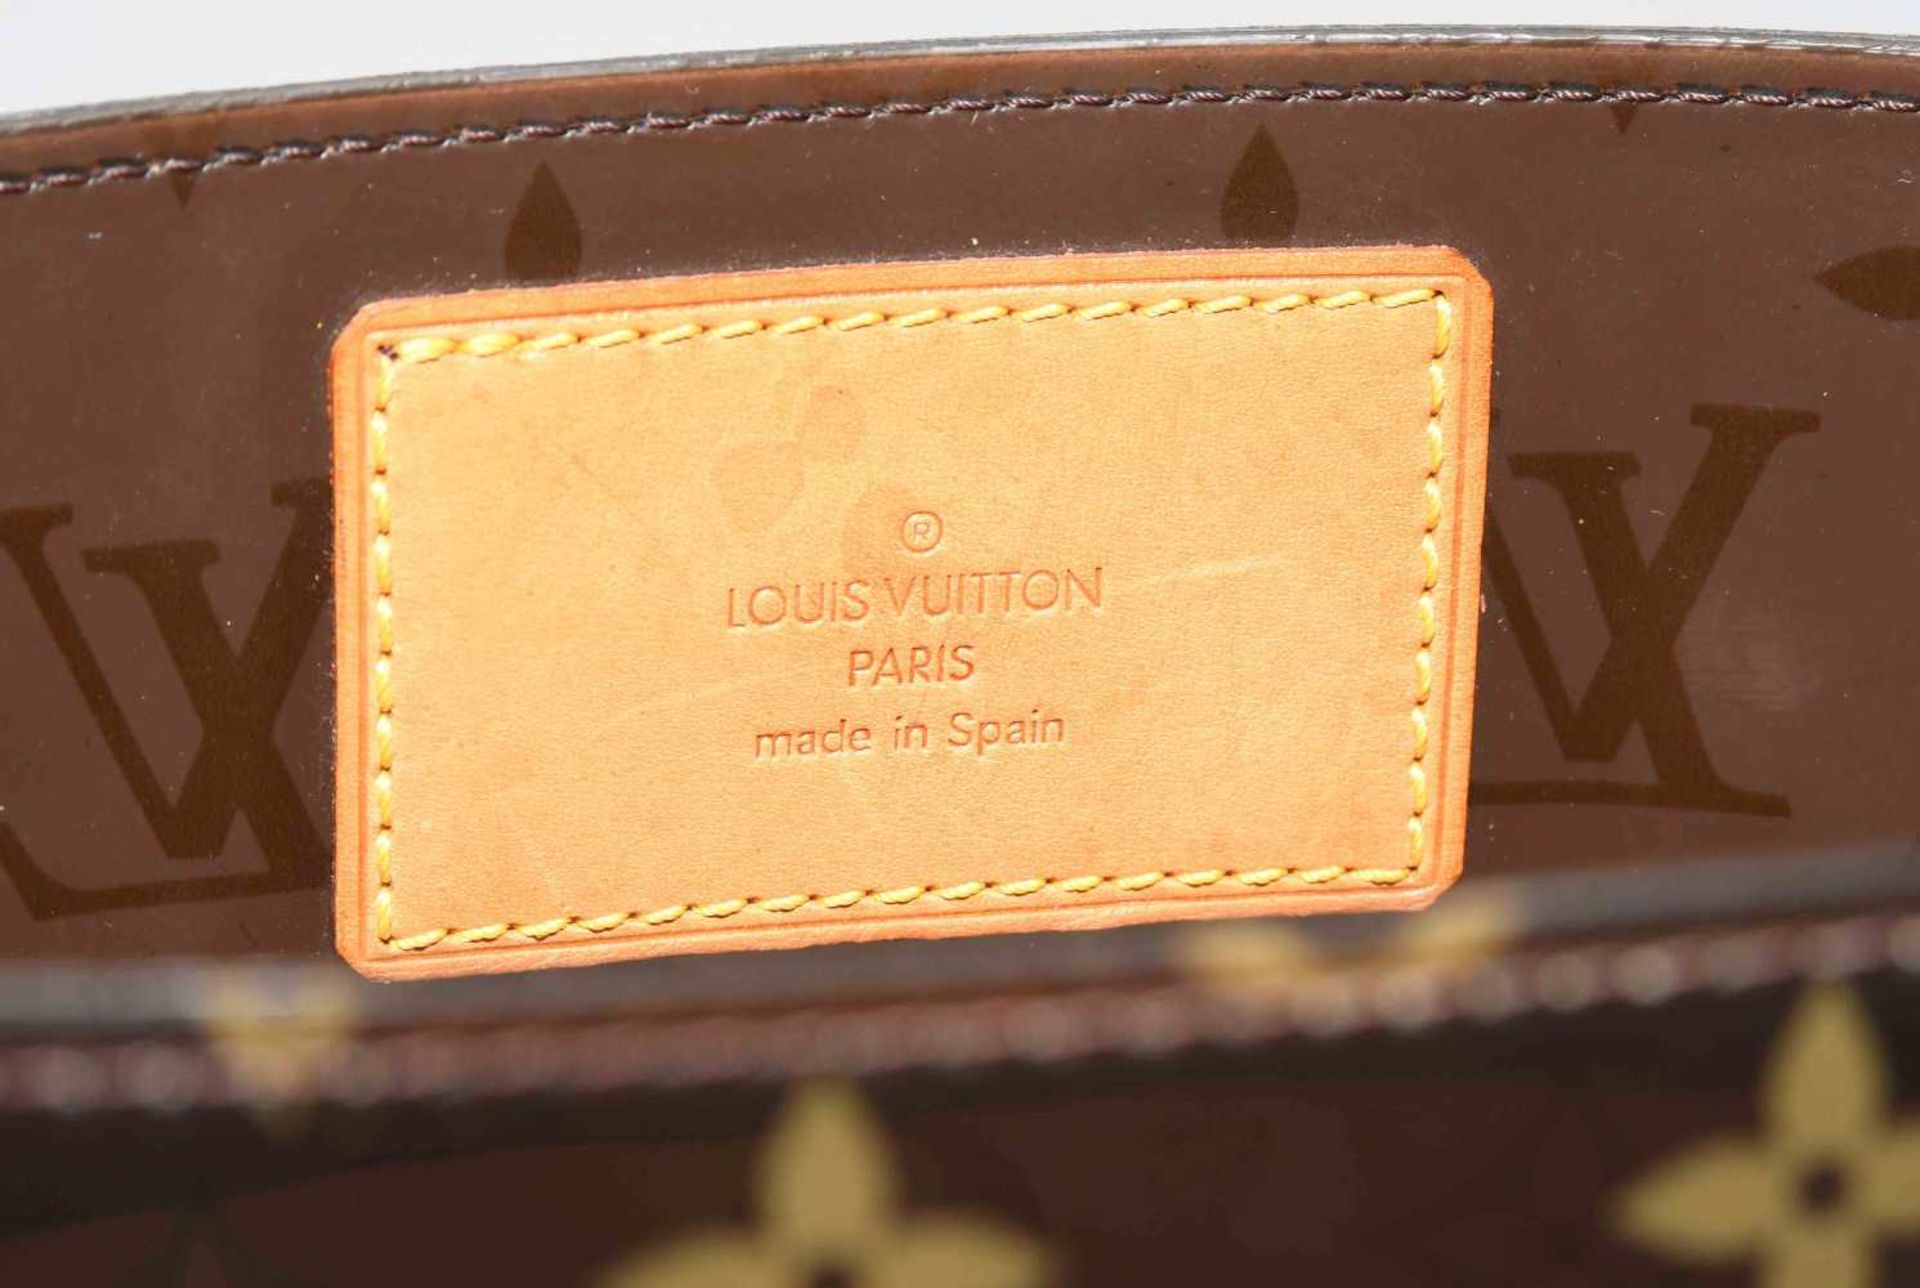 Louis Vuitton, "Ambre sac cabas"Schultertasche aus braunem Vinyl mit klassischem Monogram Muster. - Bild 14 aus 17